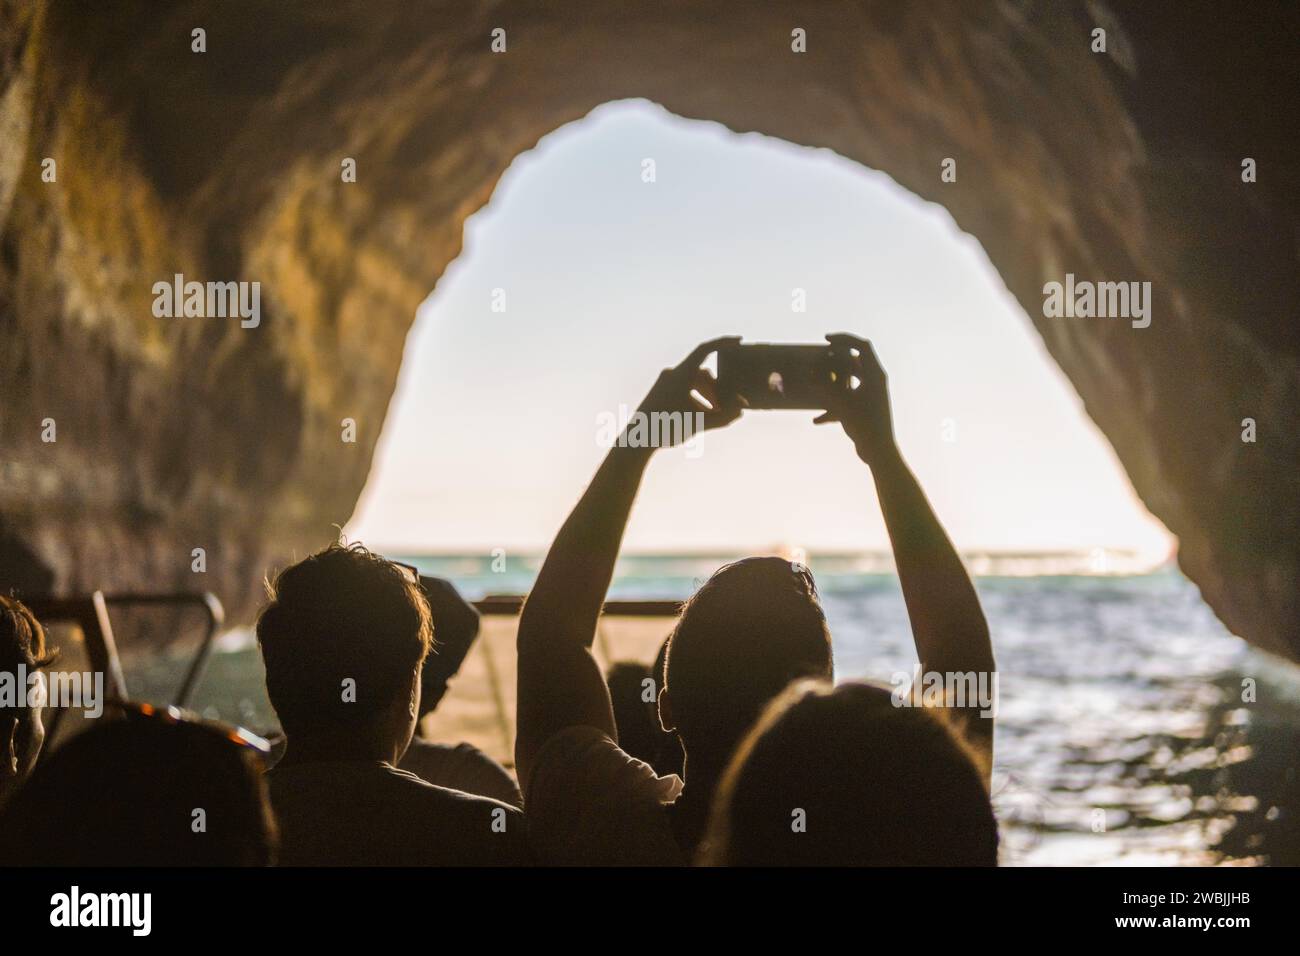 Visites touristiques et prendre des photos avec des smartphones à l'intérieur de la grotte sur la côte de l'Algarve, Albufeira, Portugal Banque D'Images